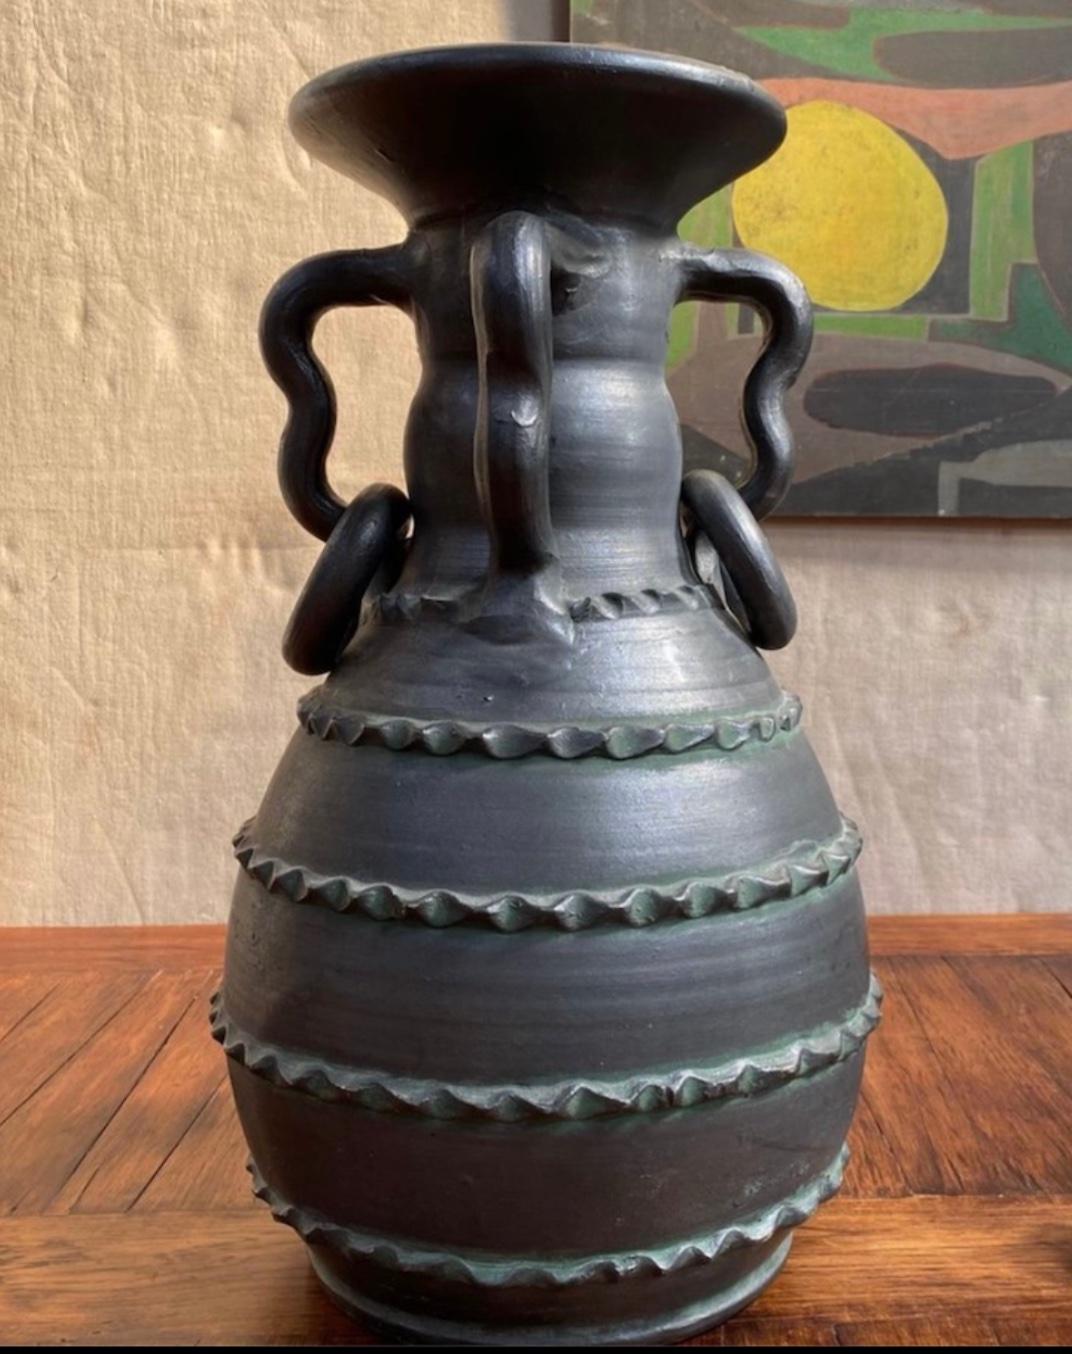 Jarre ou vase en céramique noire en grès avec une finition semi-mate douce et des accents décoratifs fantaisistes, des années 1970 en Espagne.

Espagne, vers 1970

Dimensions : 22H x 14D